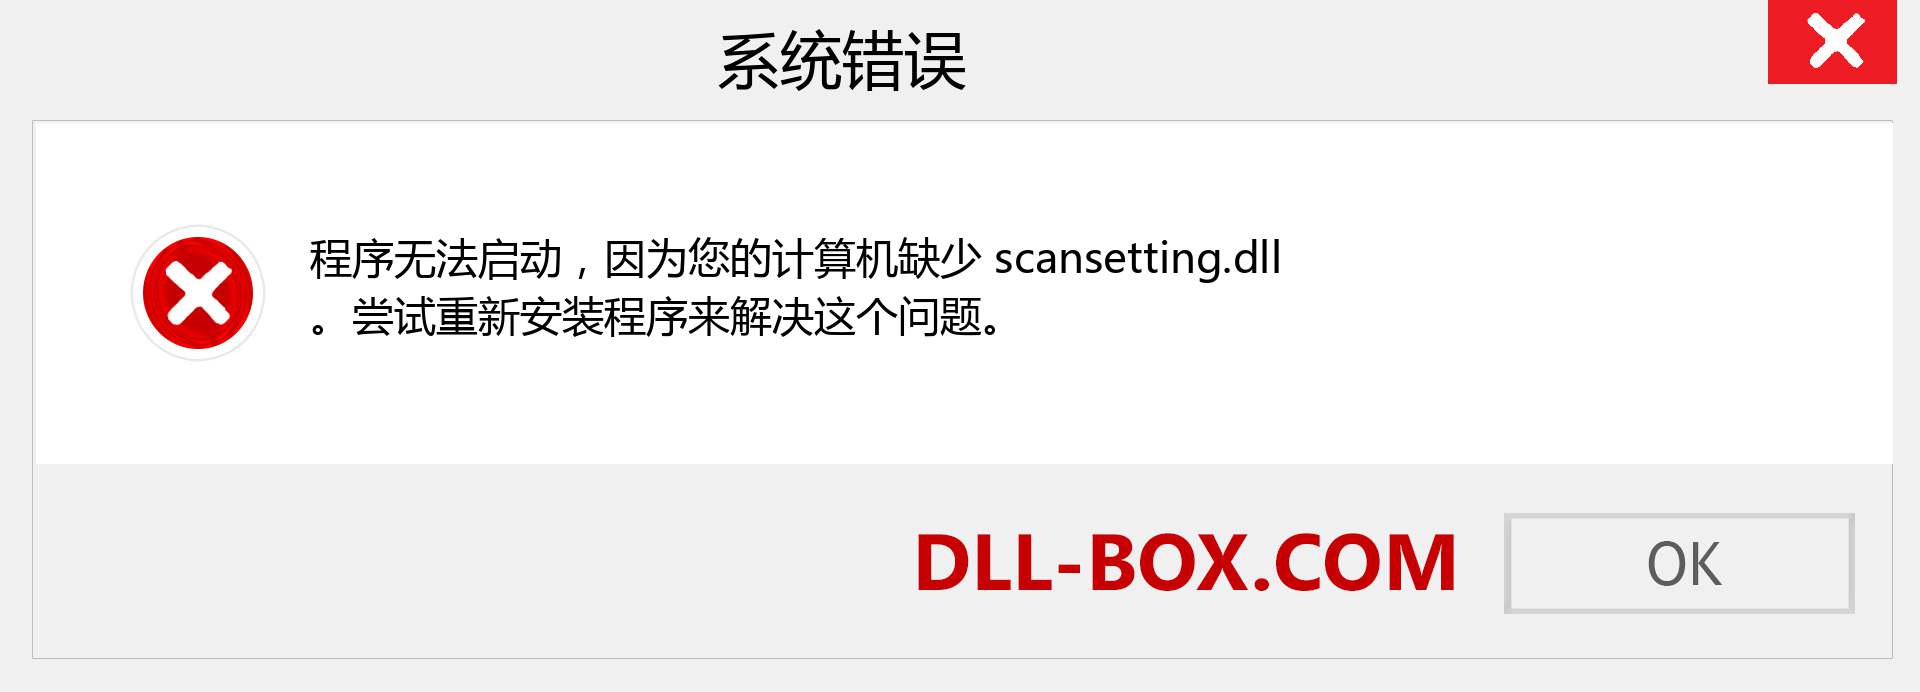 scansetting.dll 文件丢失？。 适用于 Windows 7、8、10 的下载 - 修复 Windows、照片、图像上的 scansetting dll 丢失错误